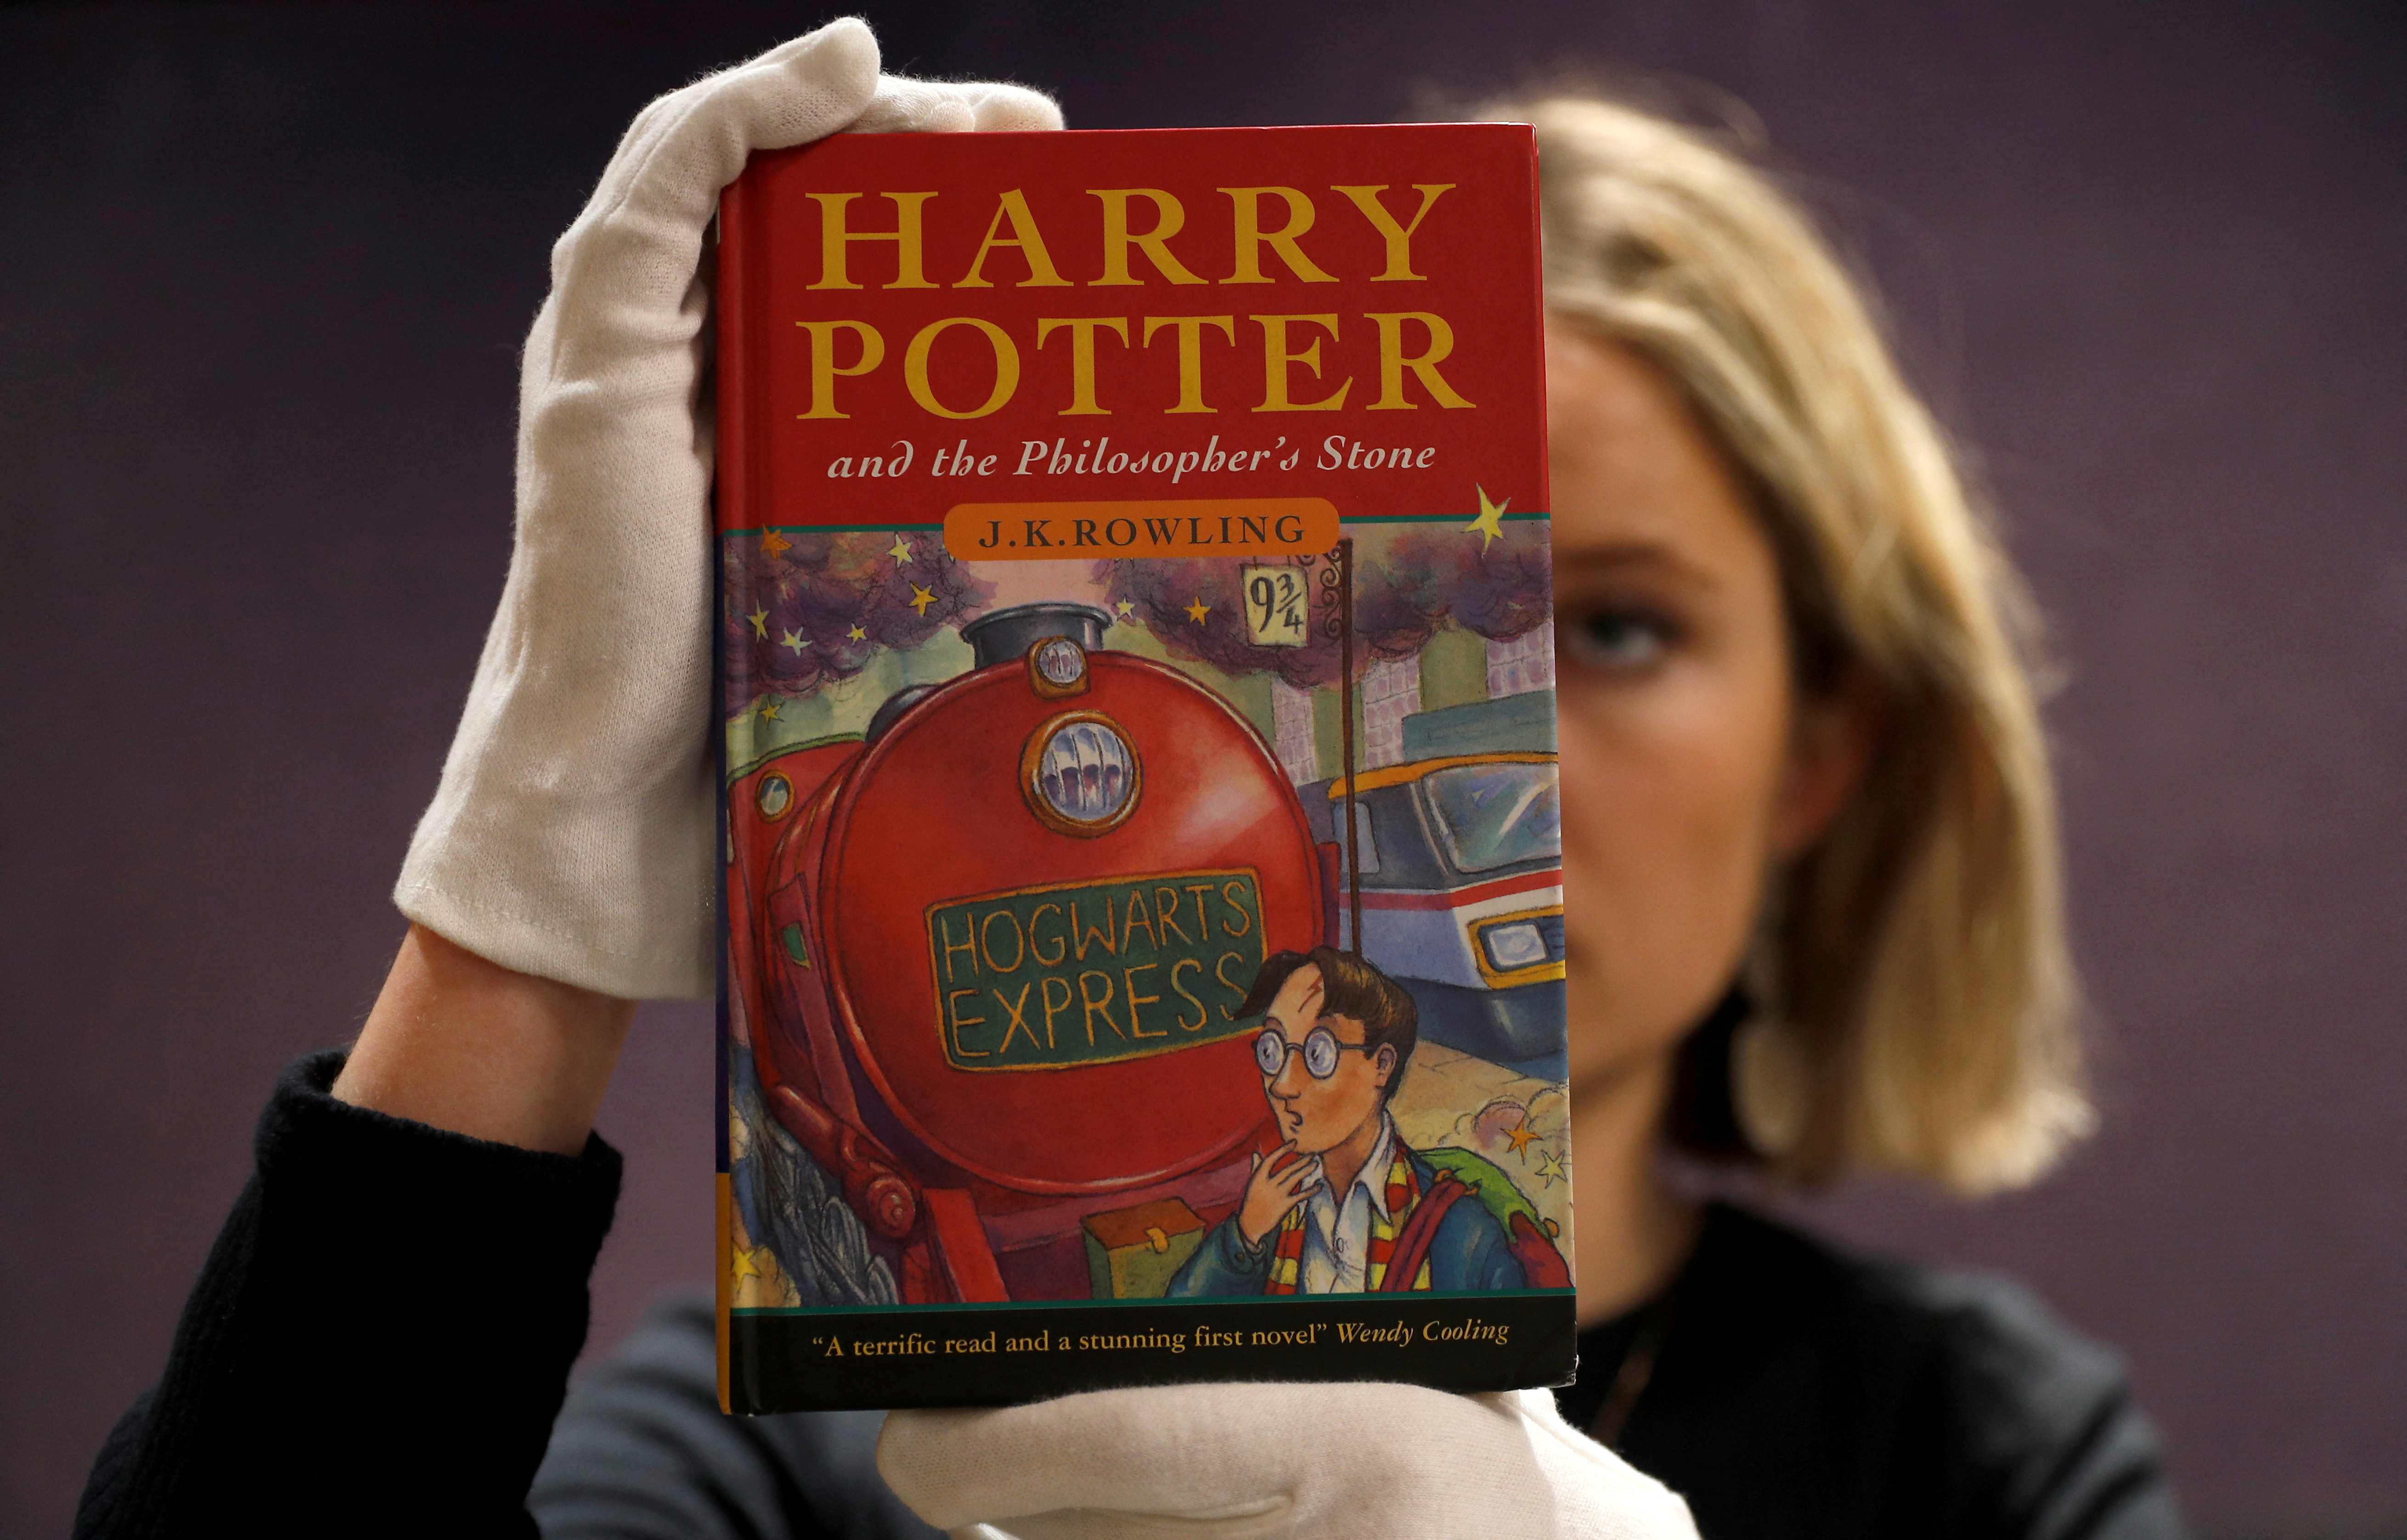 Un tesoro. Un ejemplar de la primera edicion de "Harry Potter y la piedra filosofal". (Foto REUTERS/Peter Nicholls/File Photo)